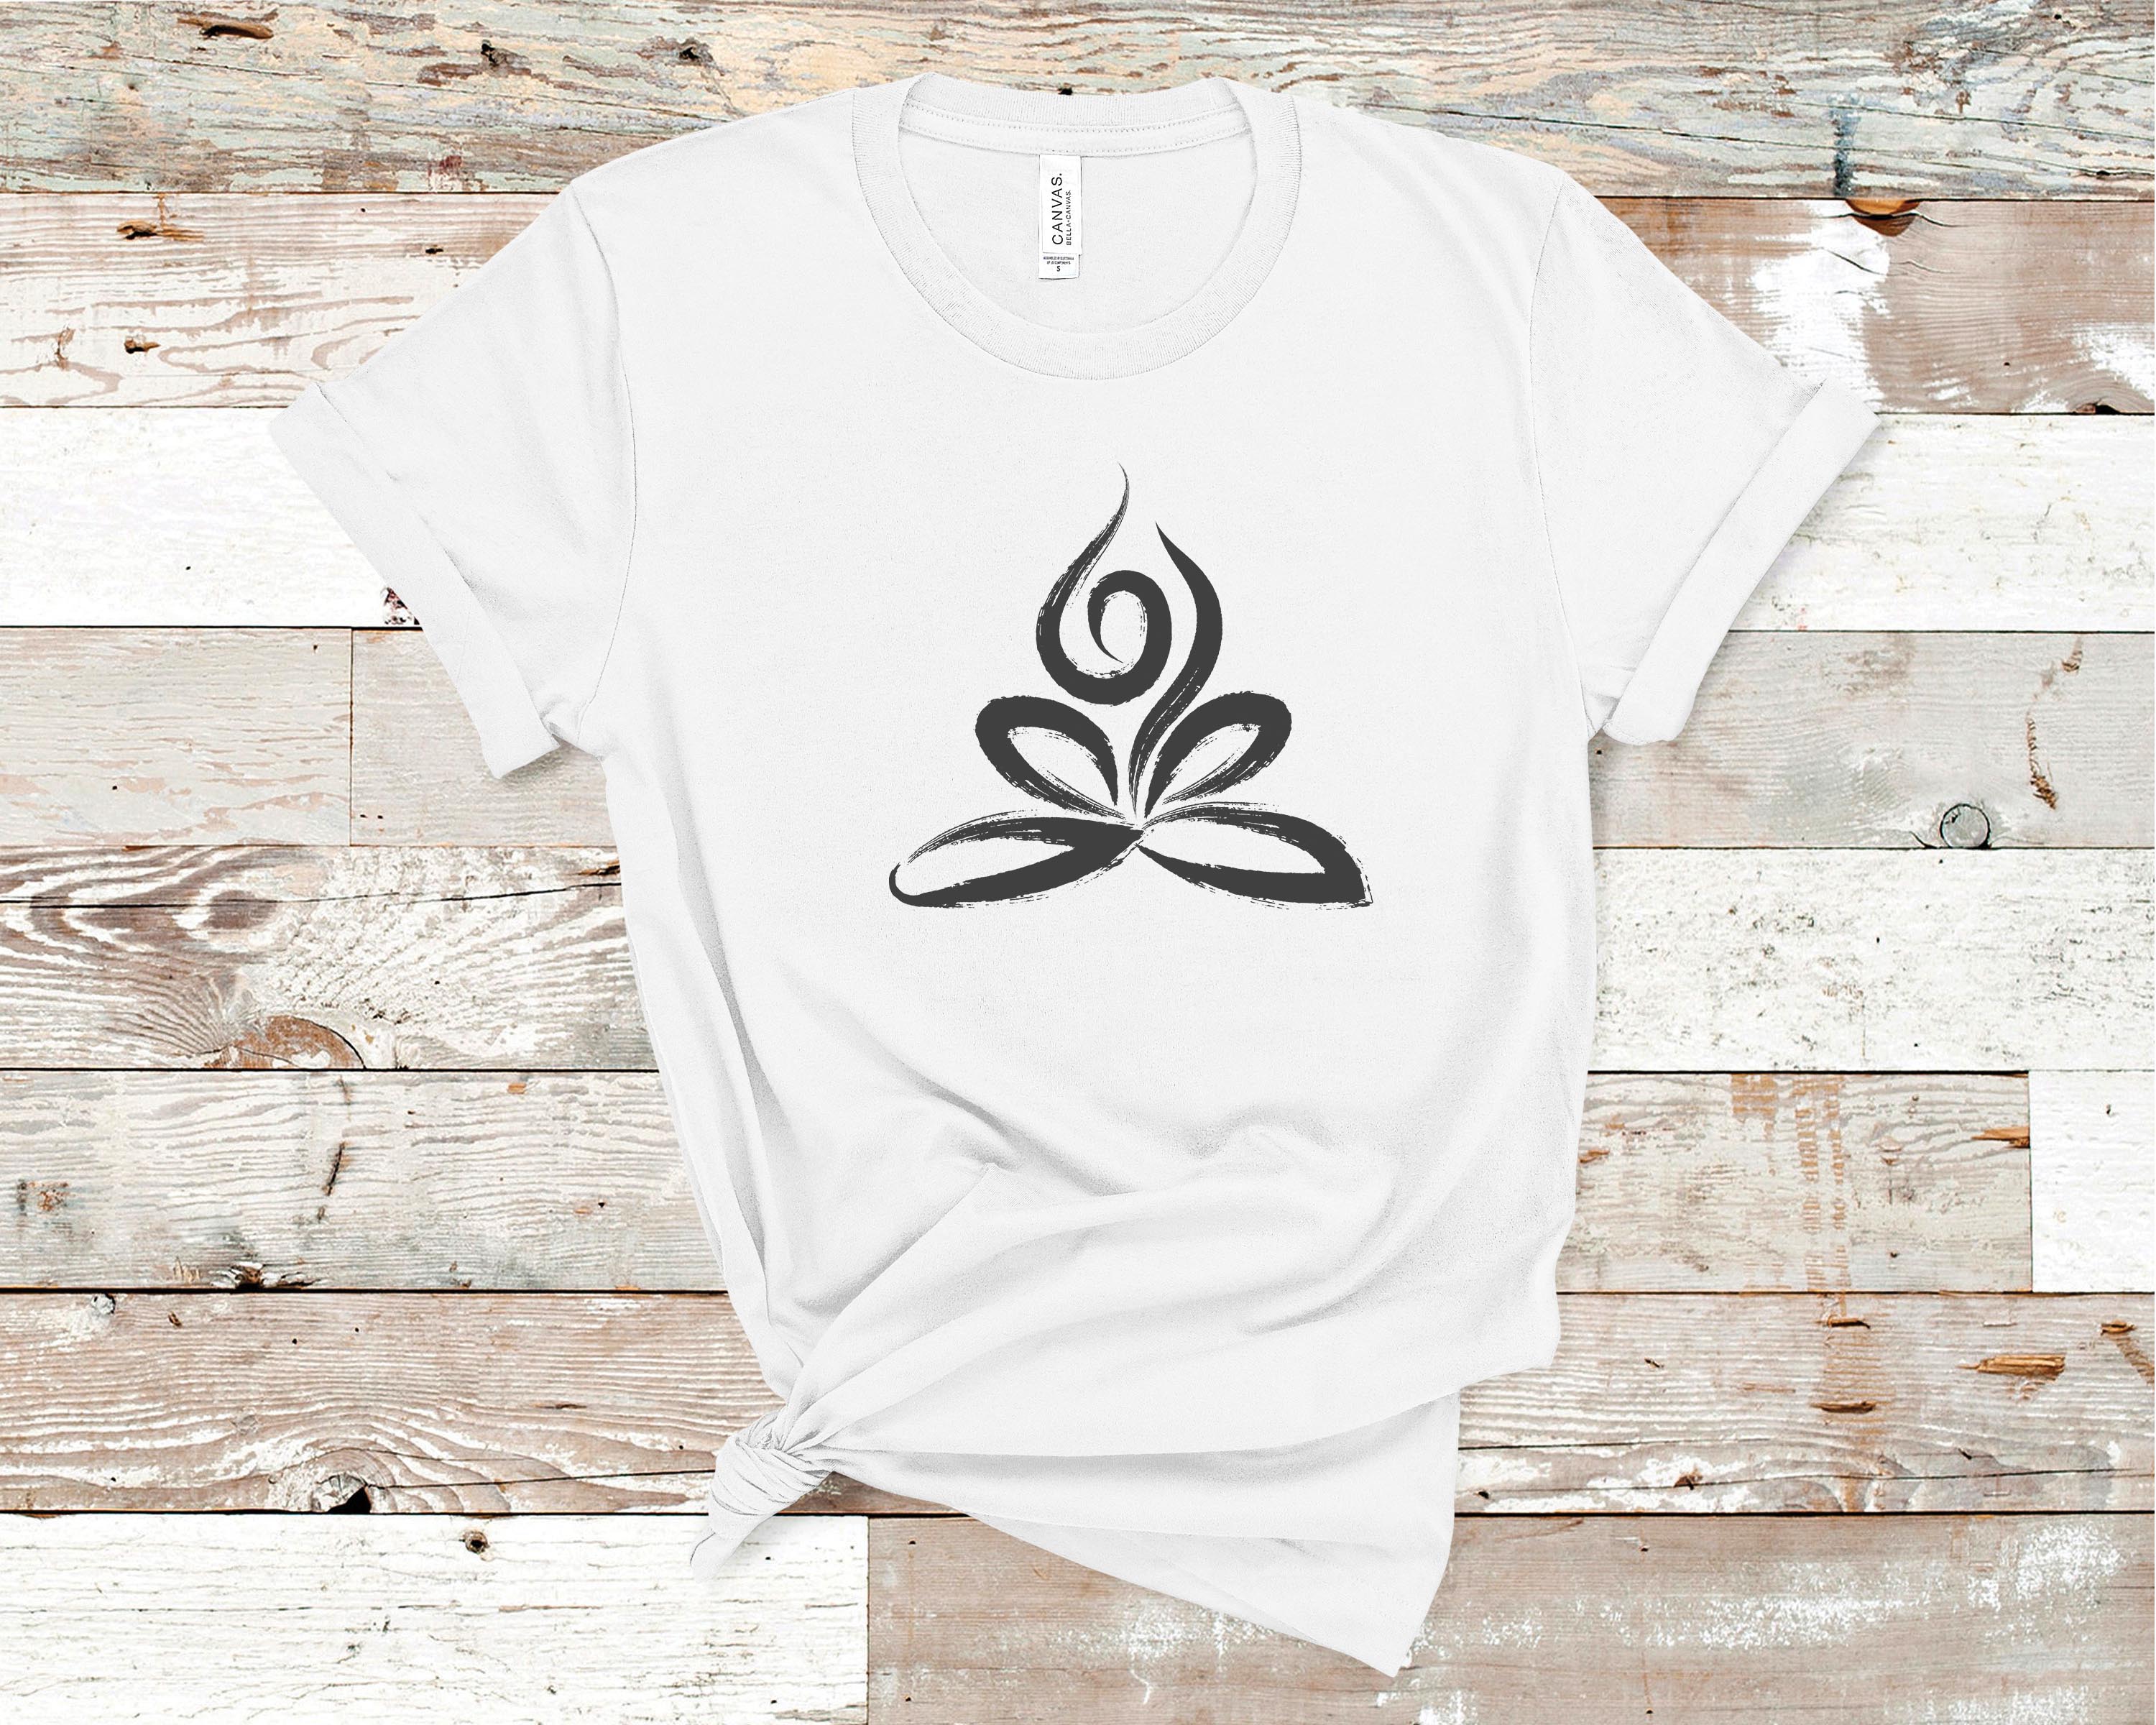 Ladies Lotus Flower V-neck Yoga Shirt - Heather Purple, XL (side print) 